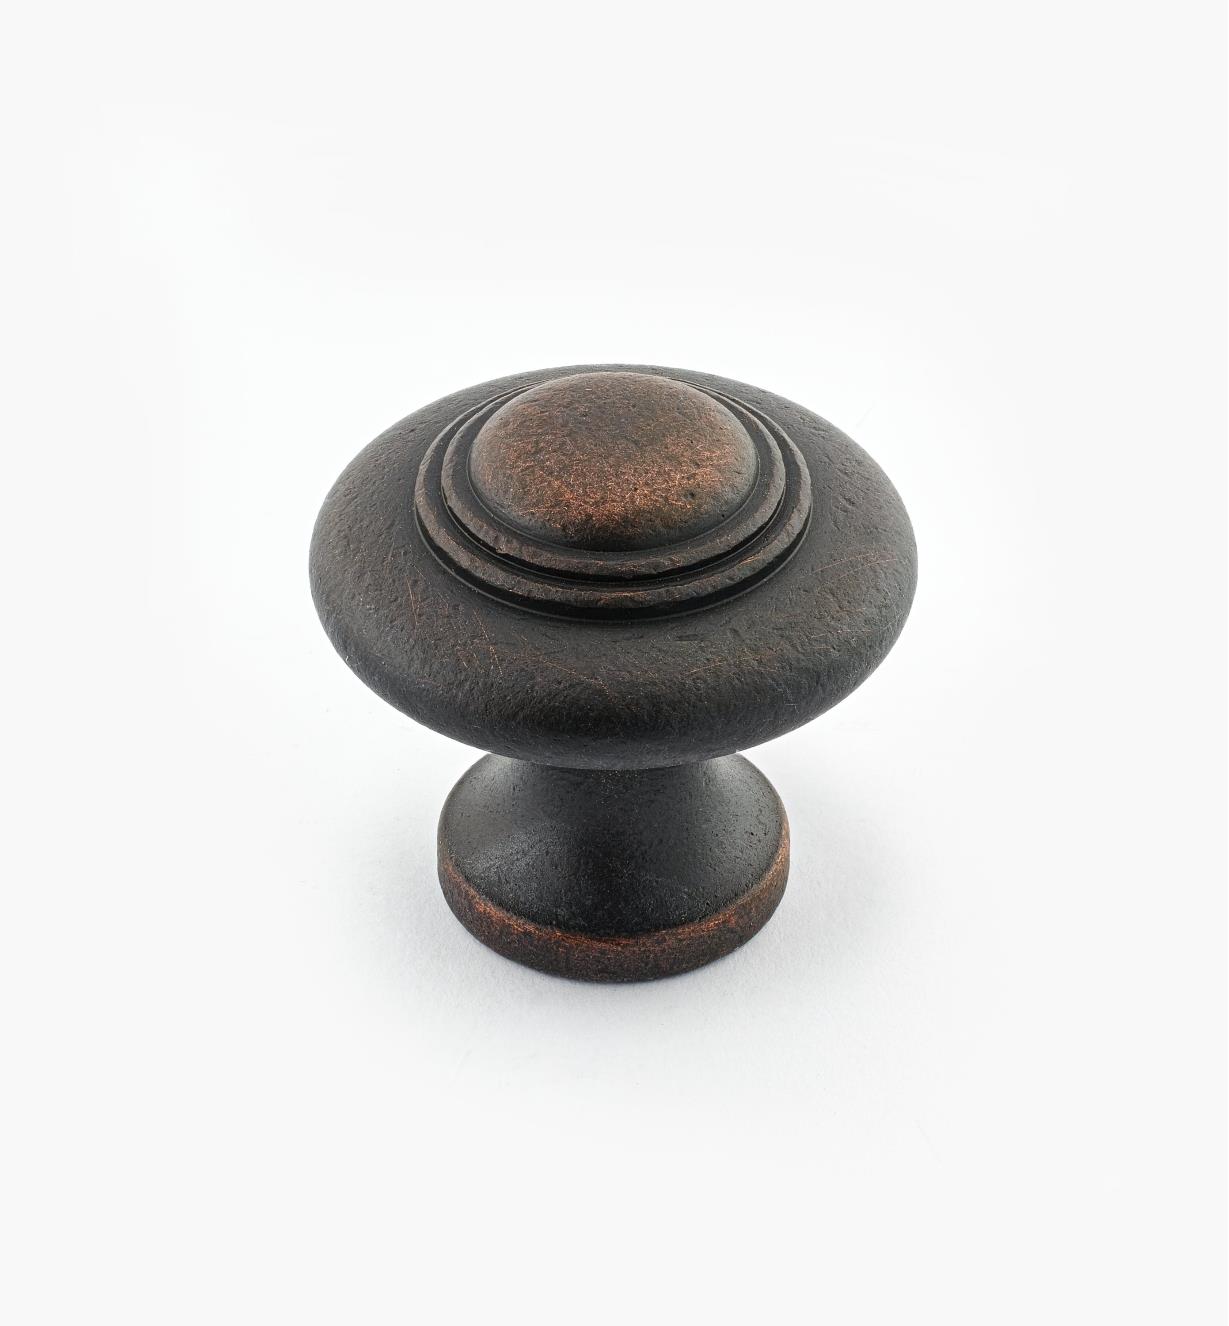 02W3053 - Bouton annelé de 1 5/16 po x 1 1/4 po, série Vieux Bronze, laiton coulé